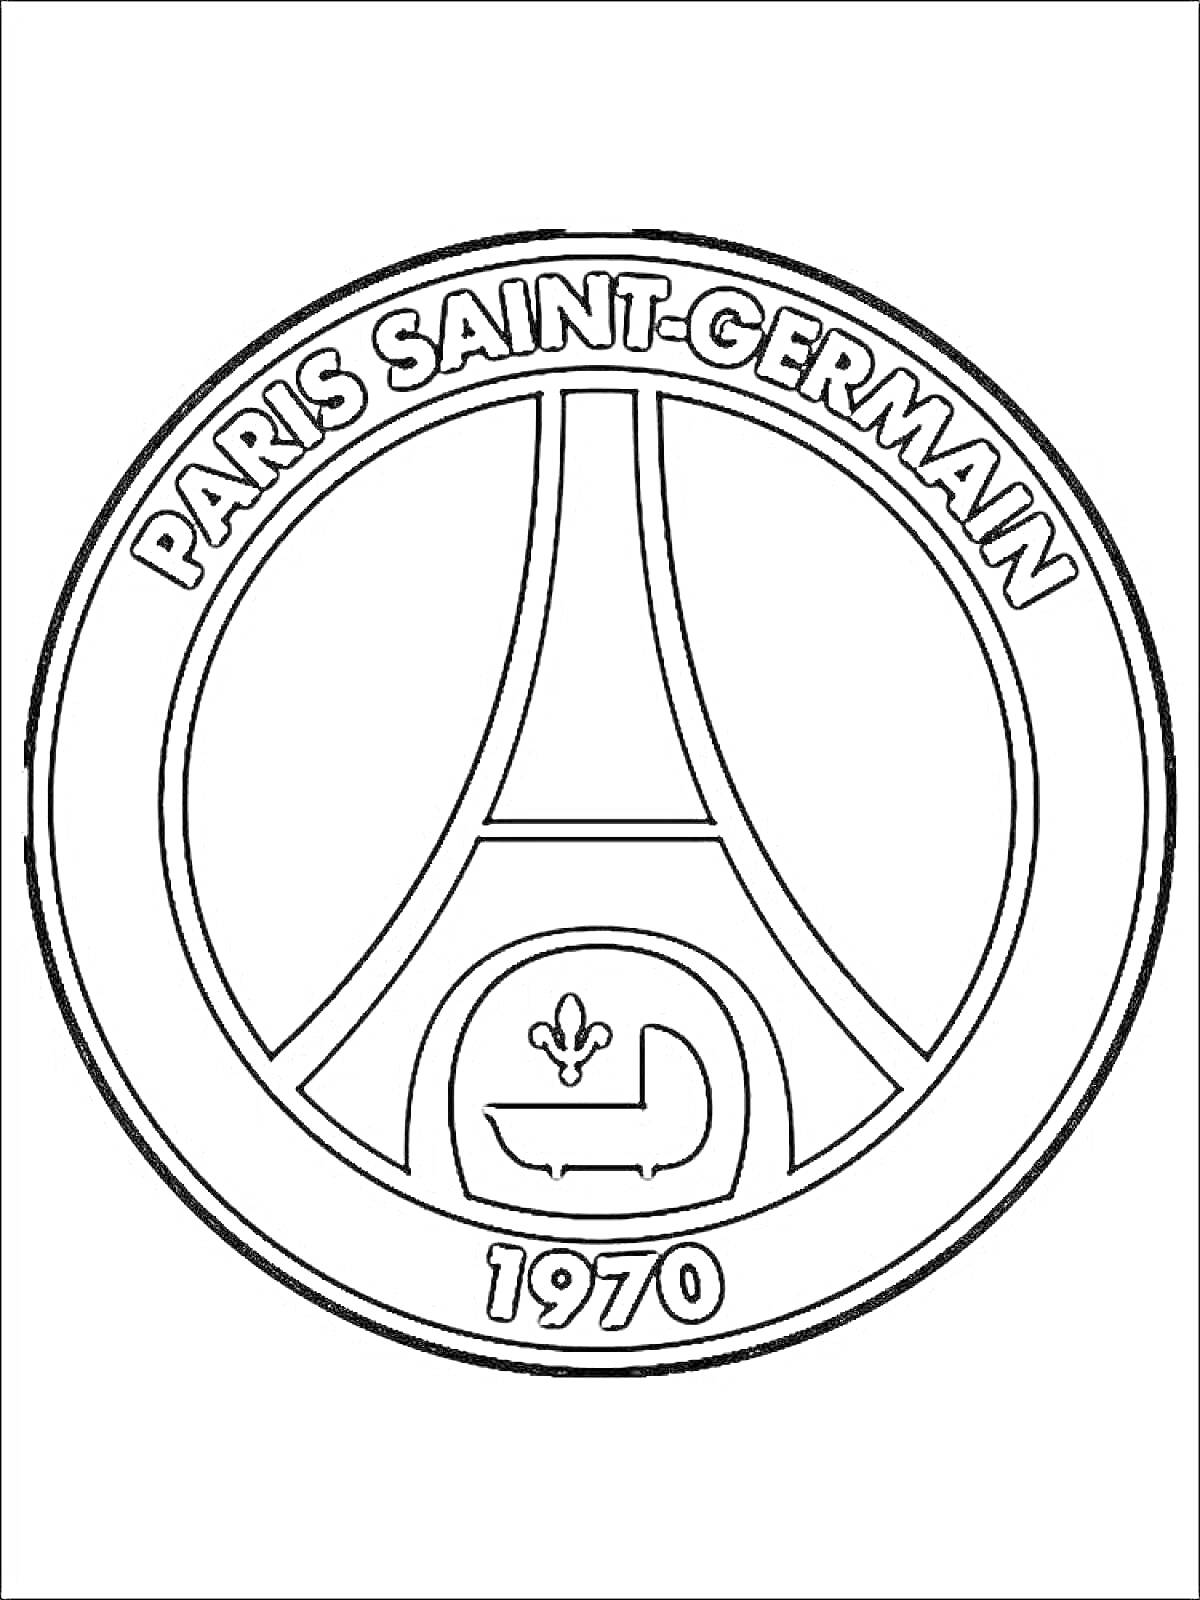 Раскраска эмблема футбольной команды Paris Saint-Germain, включая текстовую надпись 